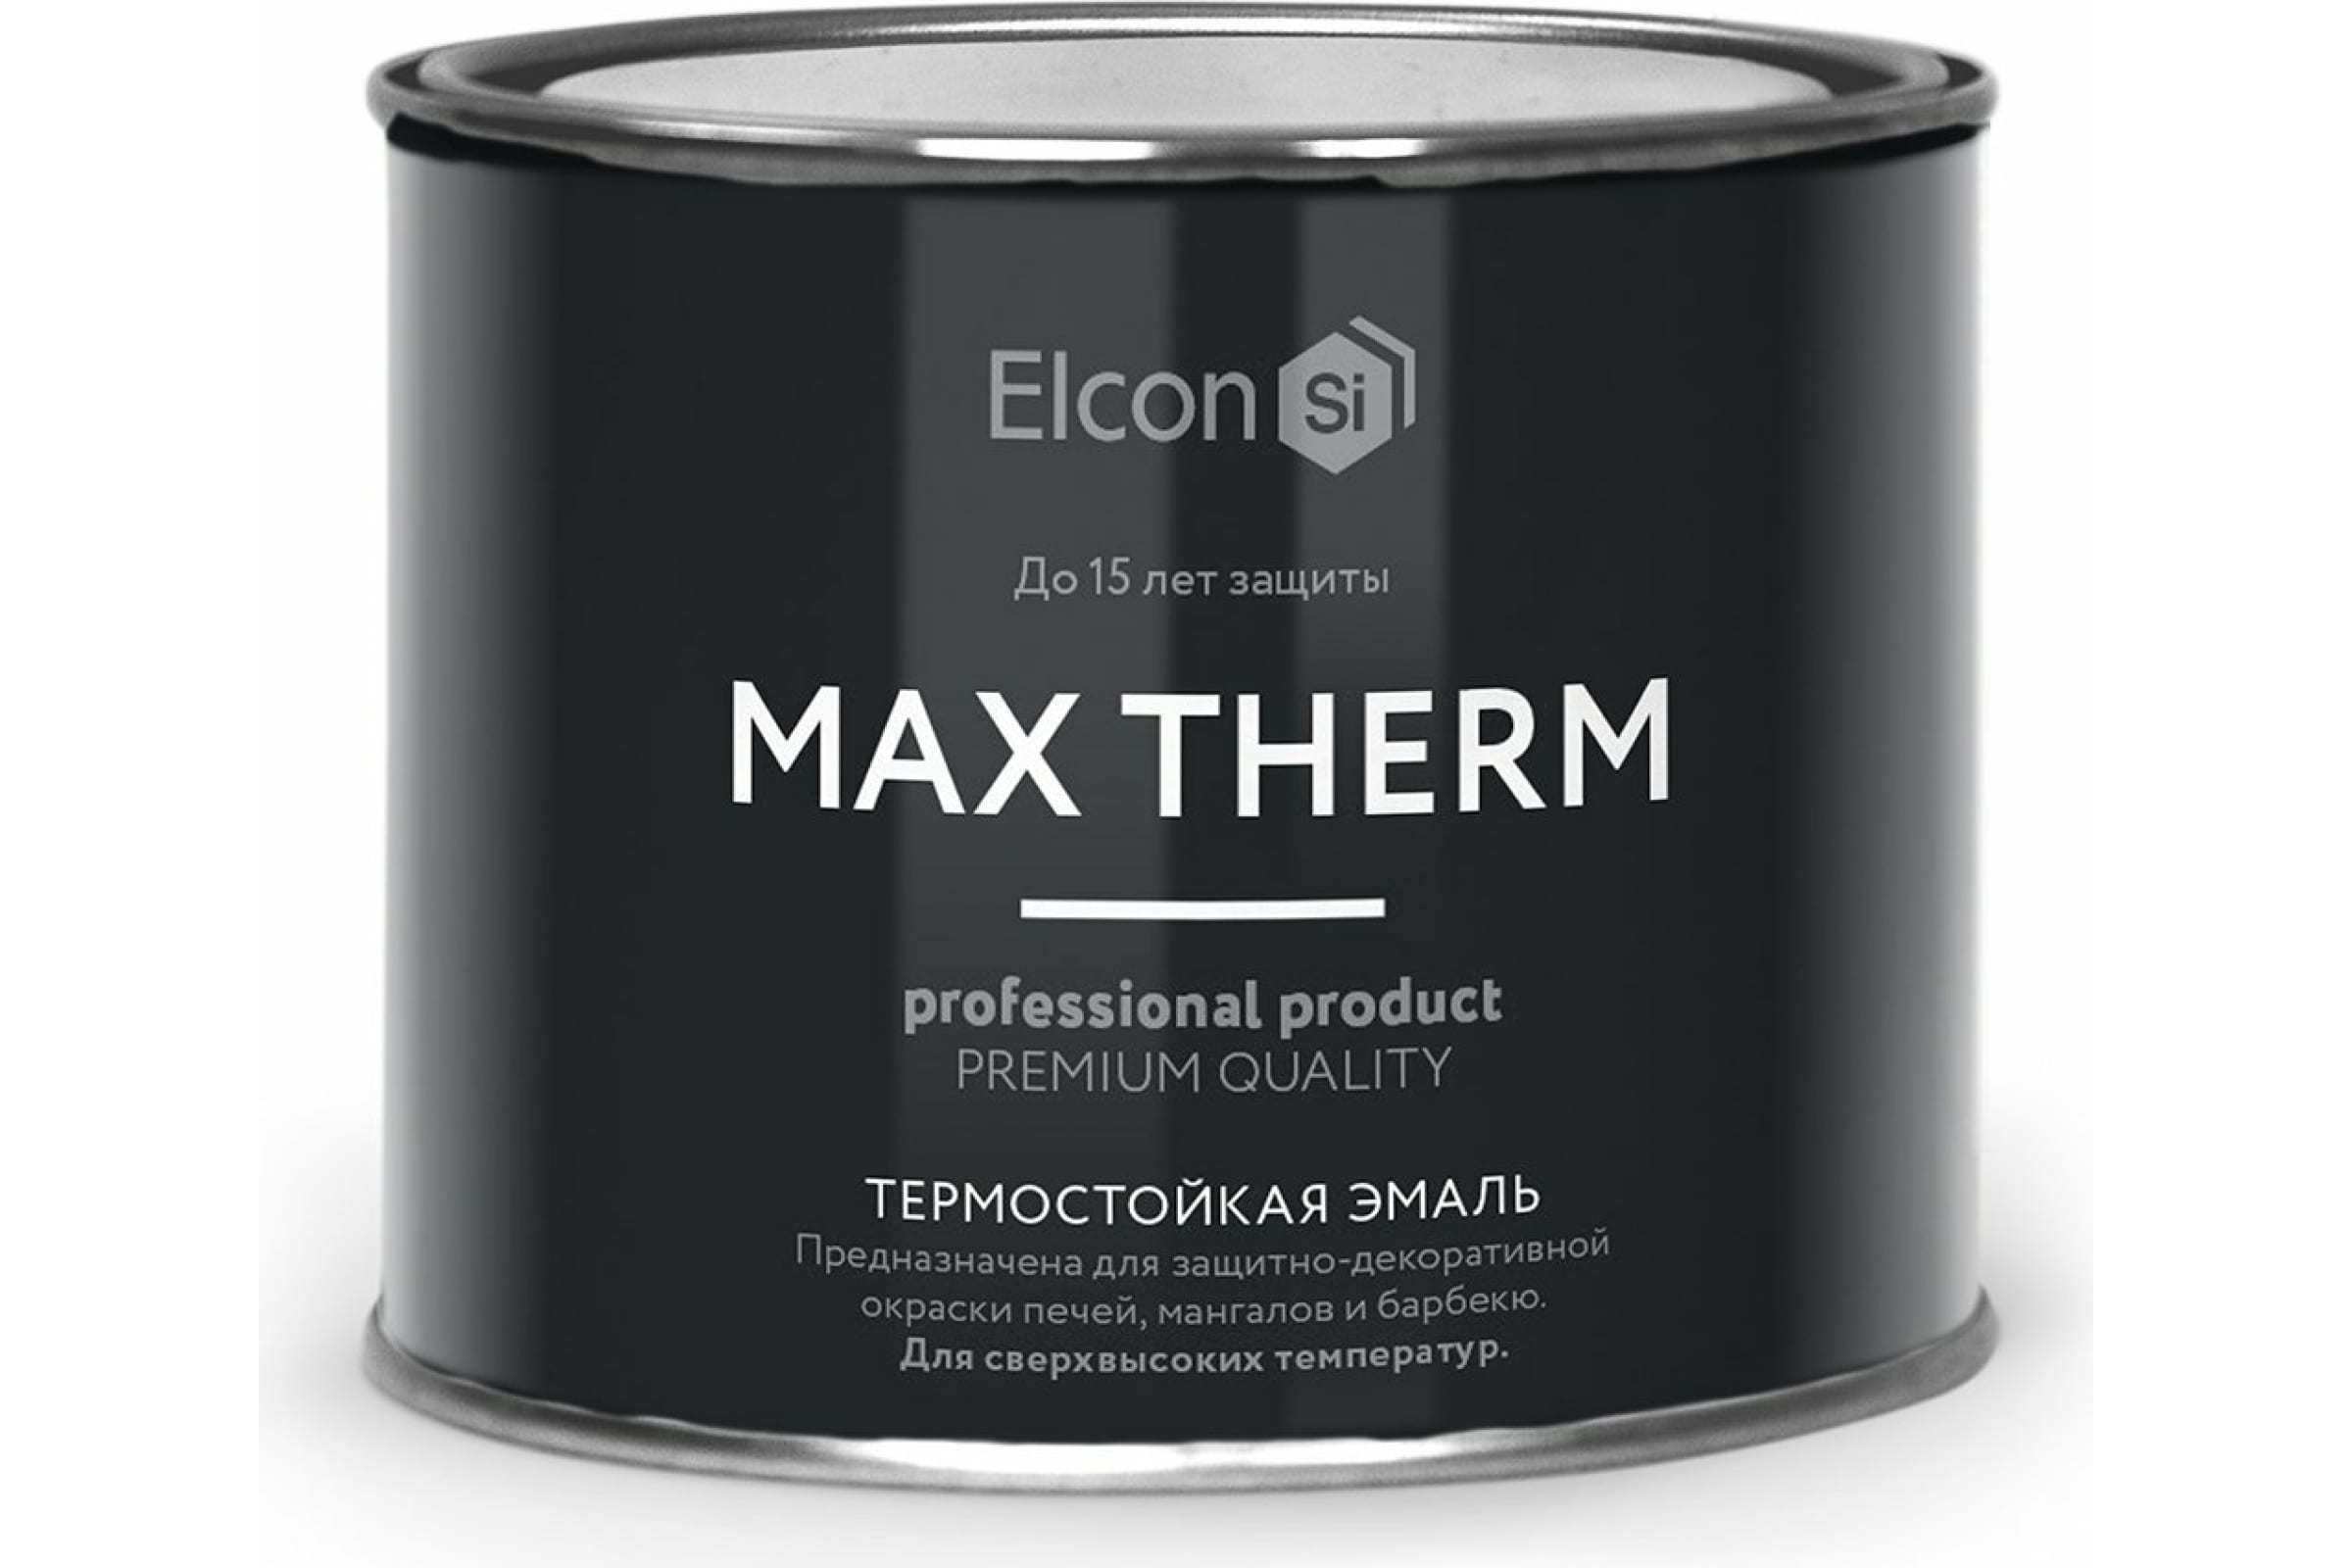 Термостойкая антикоррозионная эмаль Elcon Max Therm до 400 градусов, 0,4 л, синяя антикоррозионная паста ао кппс